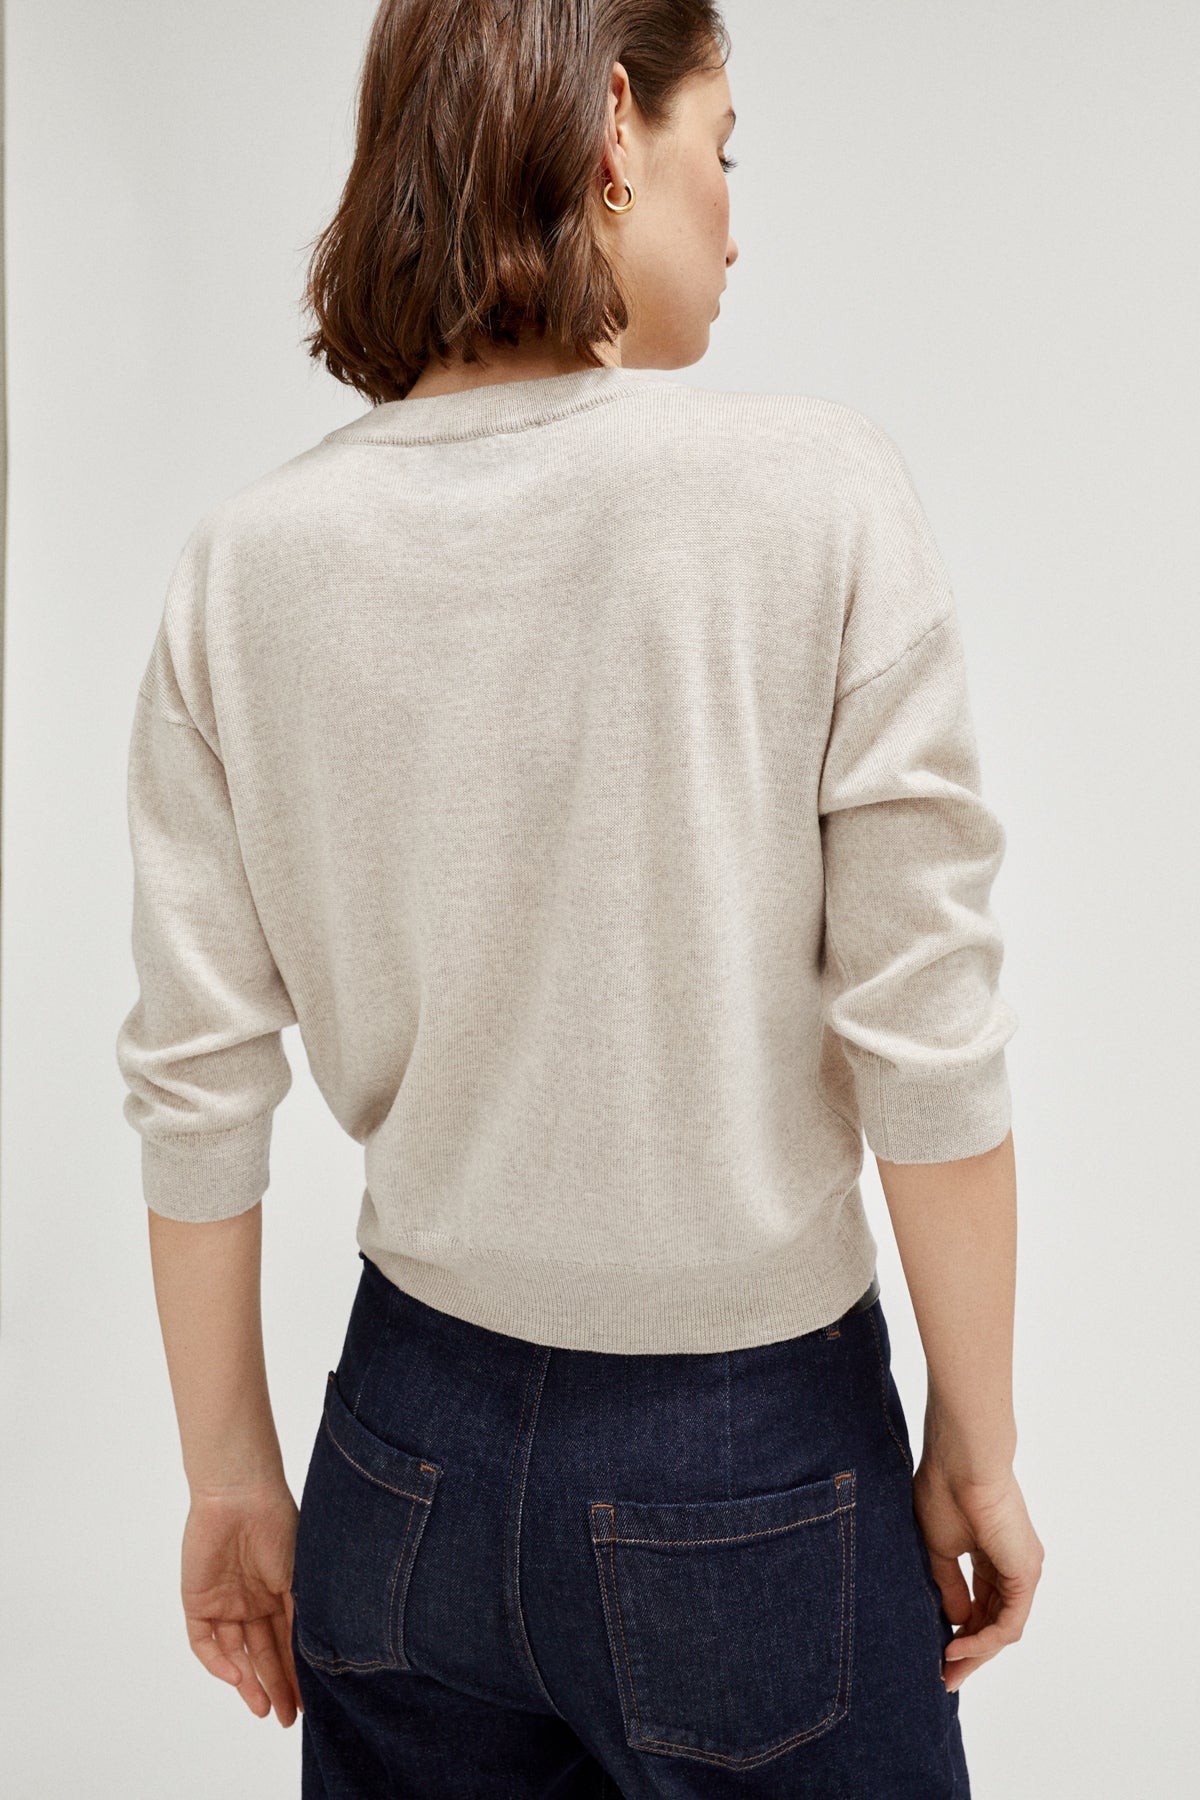 Greige | The Merino Wool Boxy T-Shirt